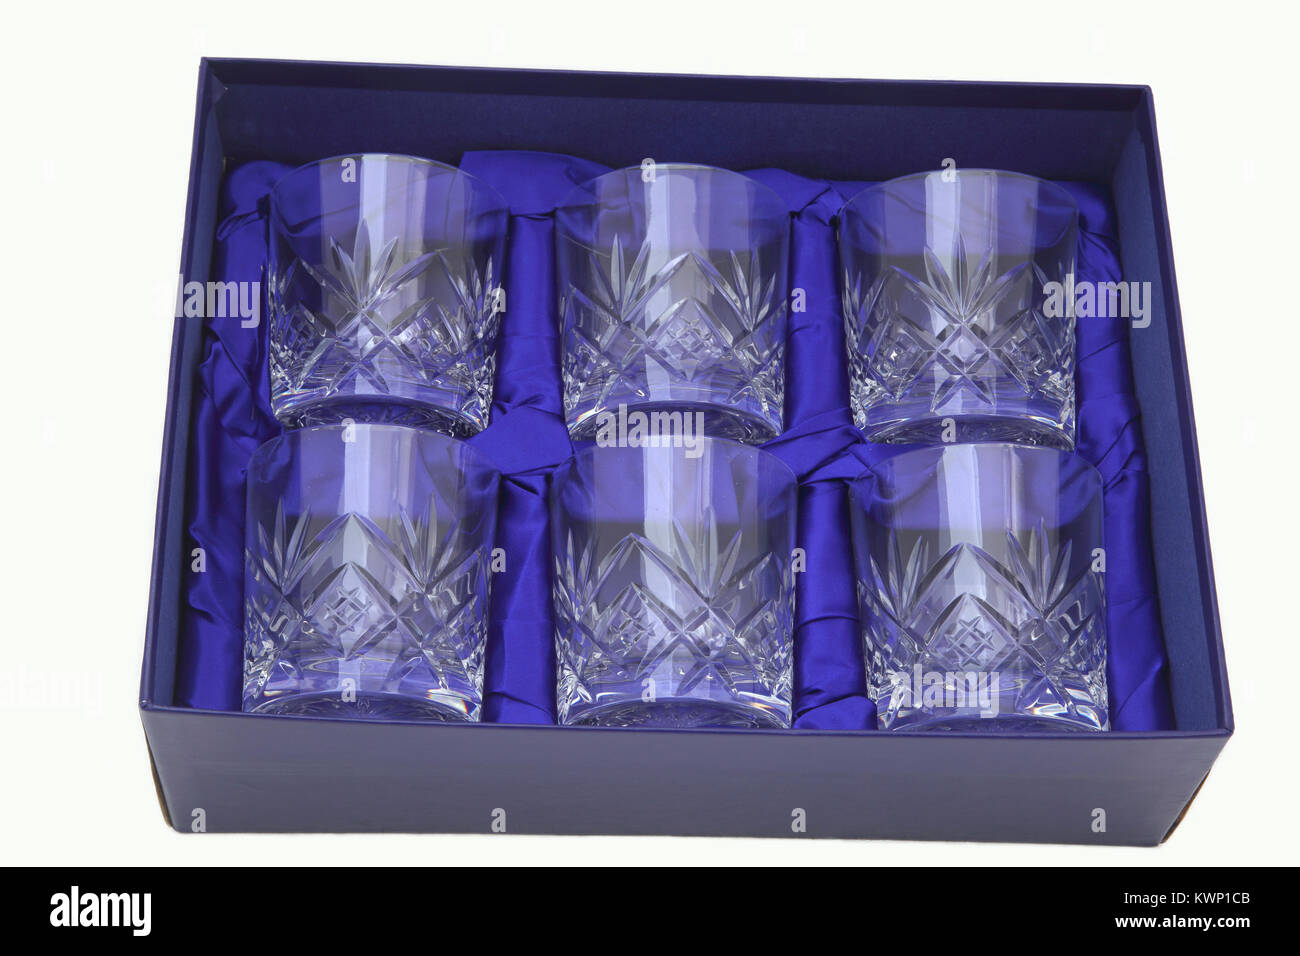 Juego de vasos de cristal fotografías e imágenes de alta resolución - Alamy